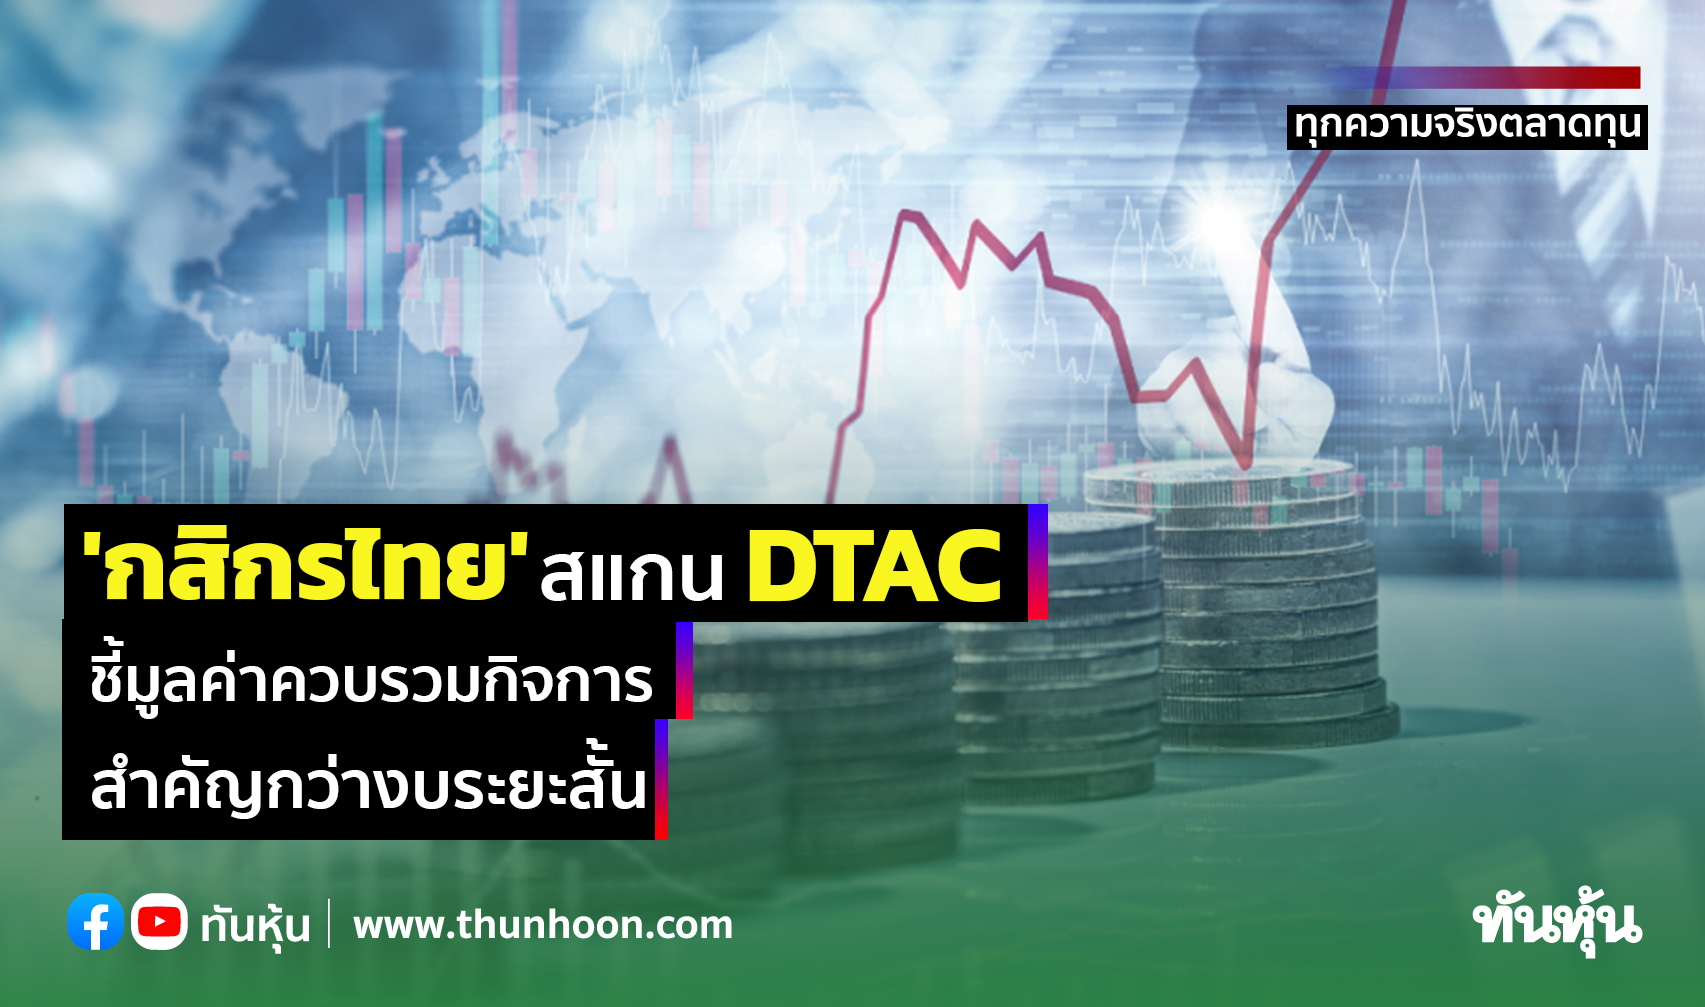 'กสิกรไทย' สแกน DTAC ชี้มูลค่าควบรวมกิจการ สำคัญกว่างบระยะสั้น